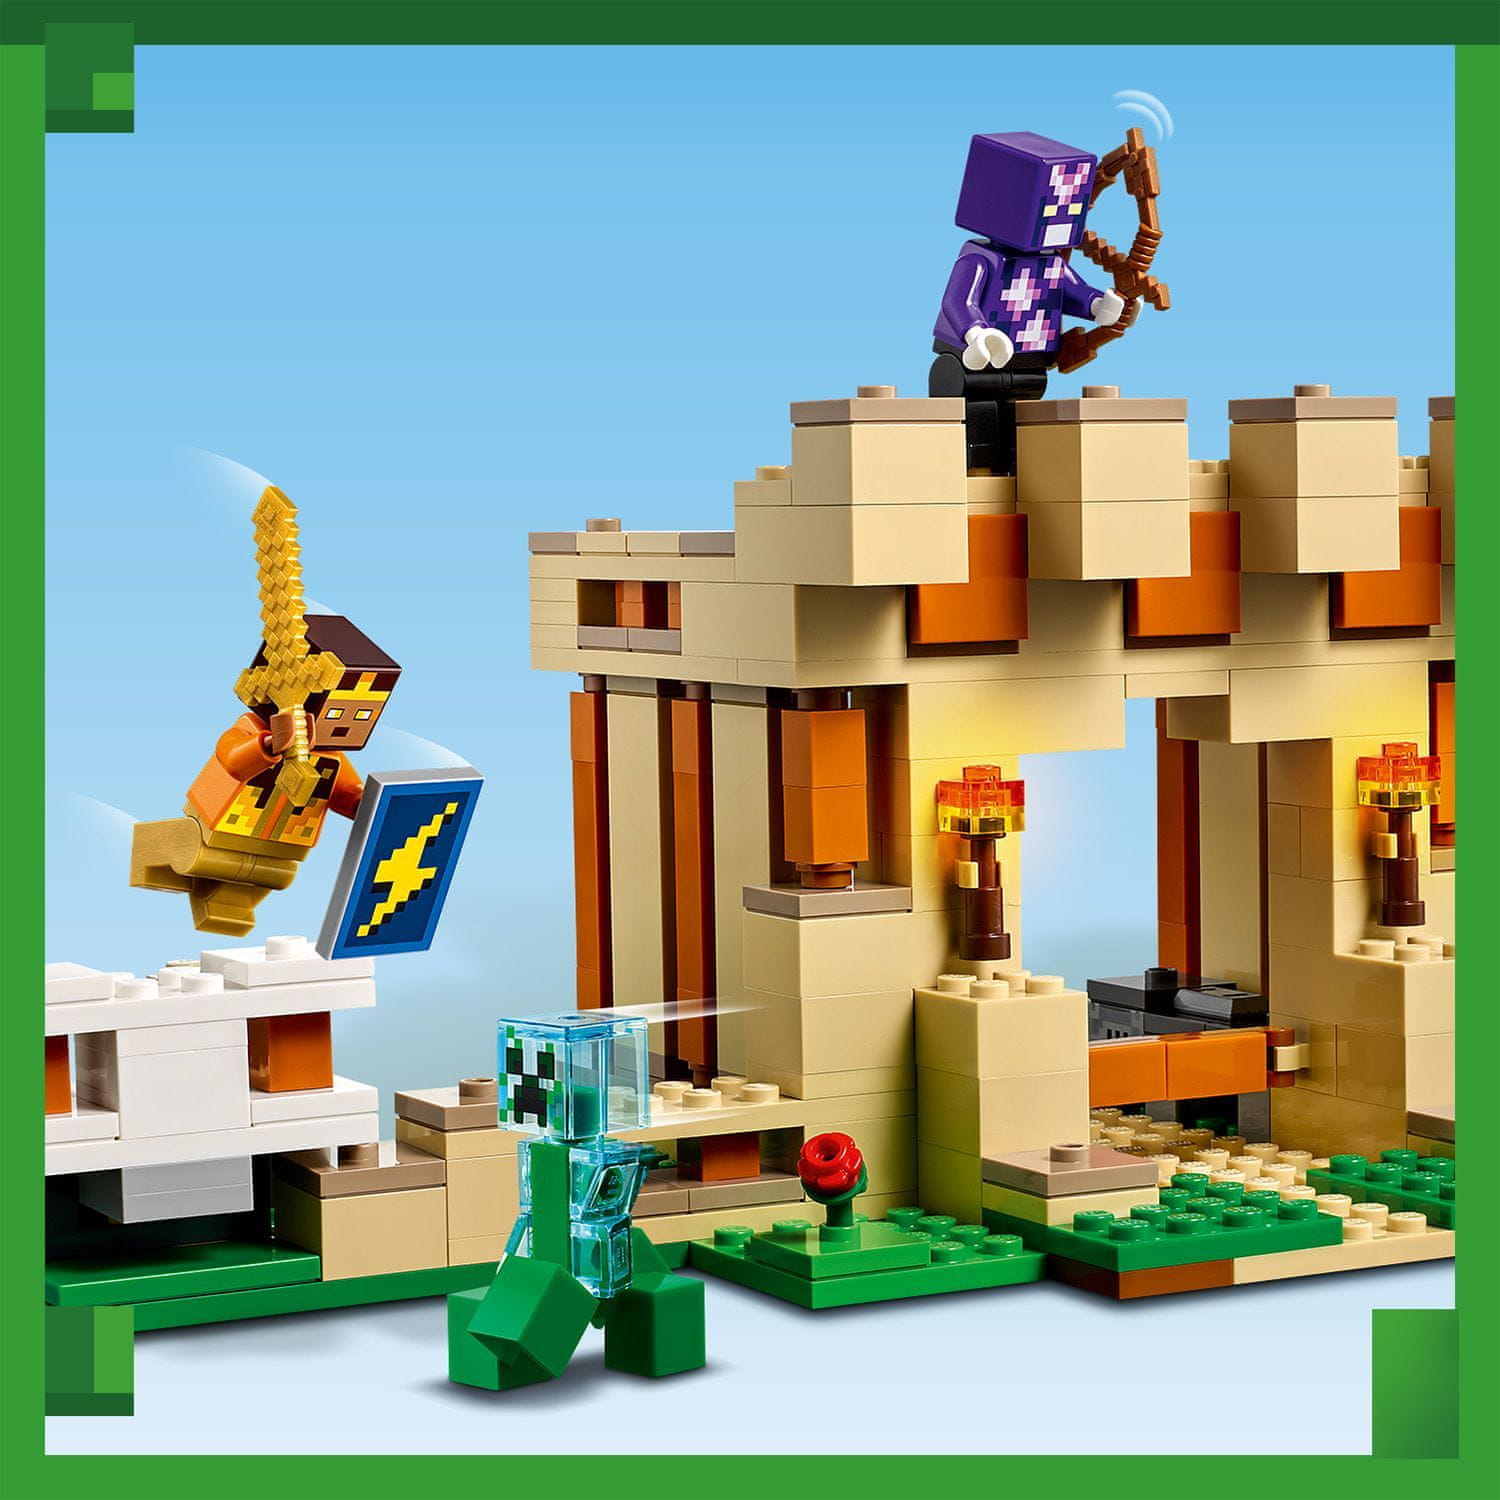 LEGO Minecraft 21250 Pevnost železného golema